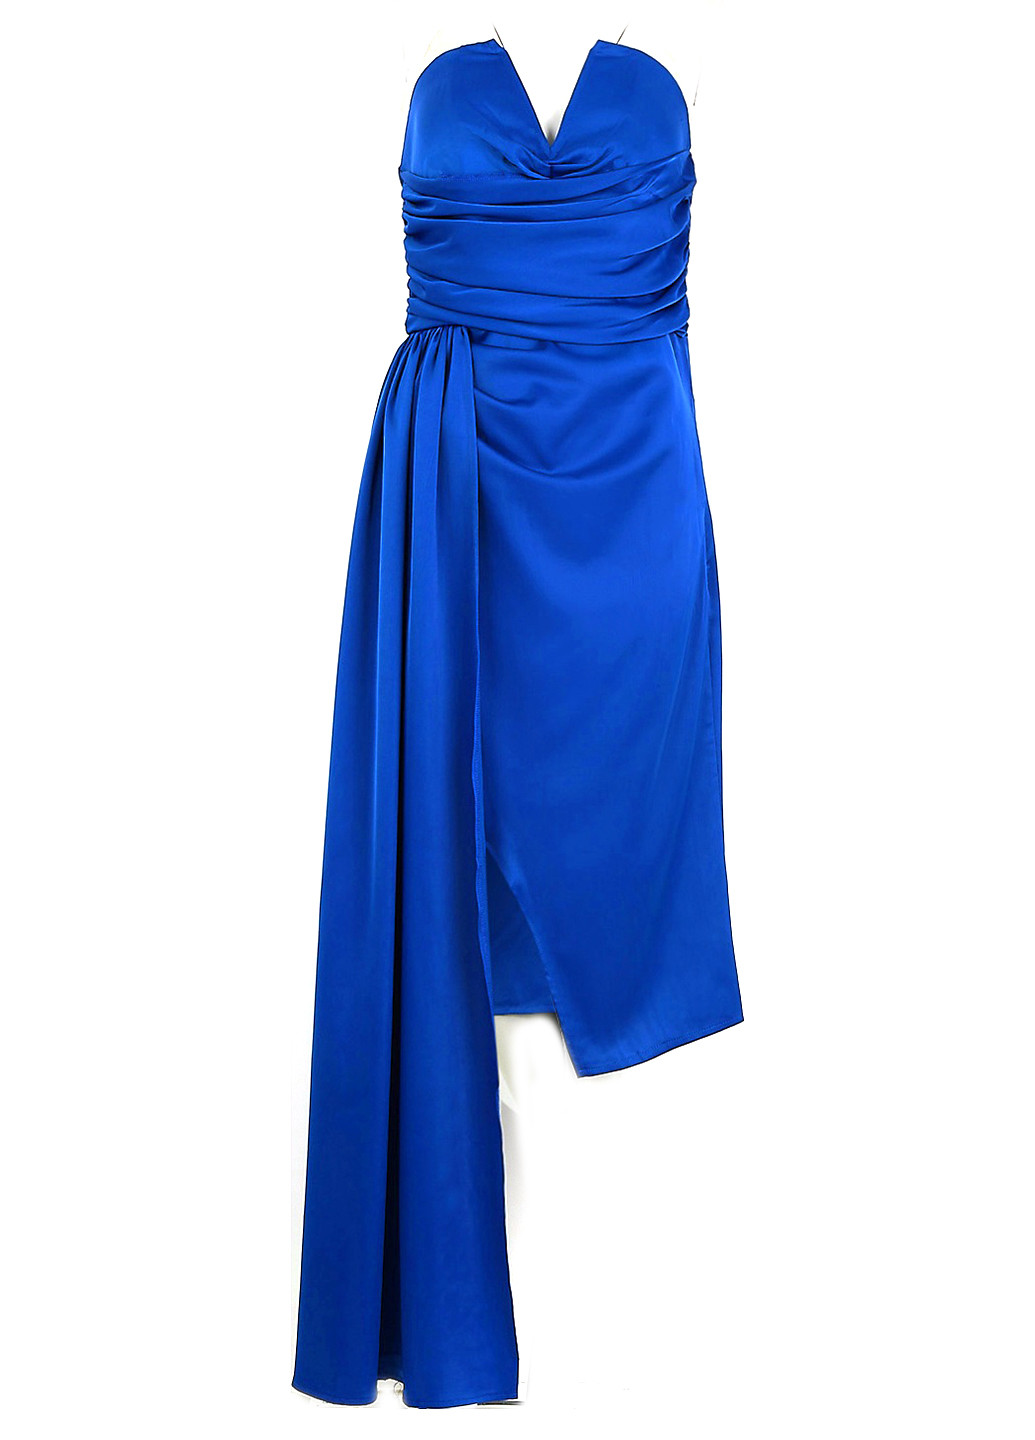 Синее коктейльное платье со шлейфом, бандо Boohoo однотонное